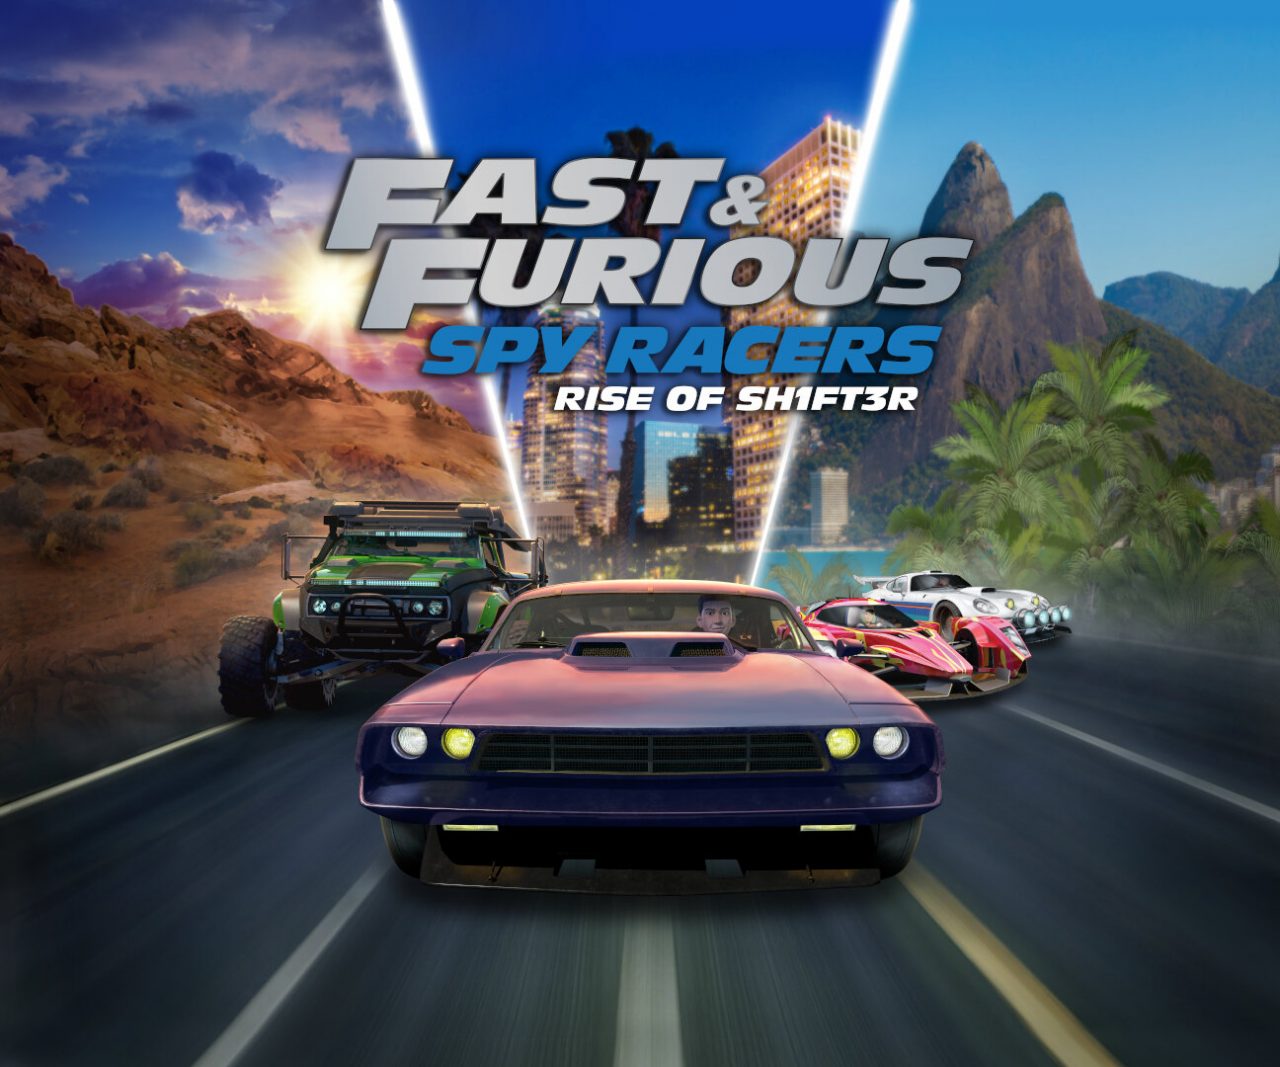 Fast & Furious: Spy Racers Il ritorno della Sh1ft3r